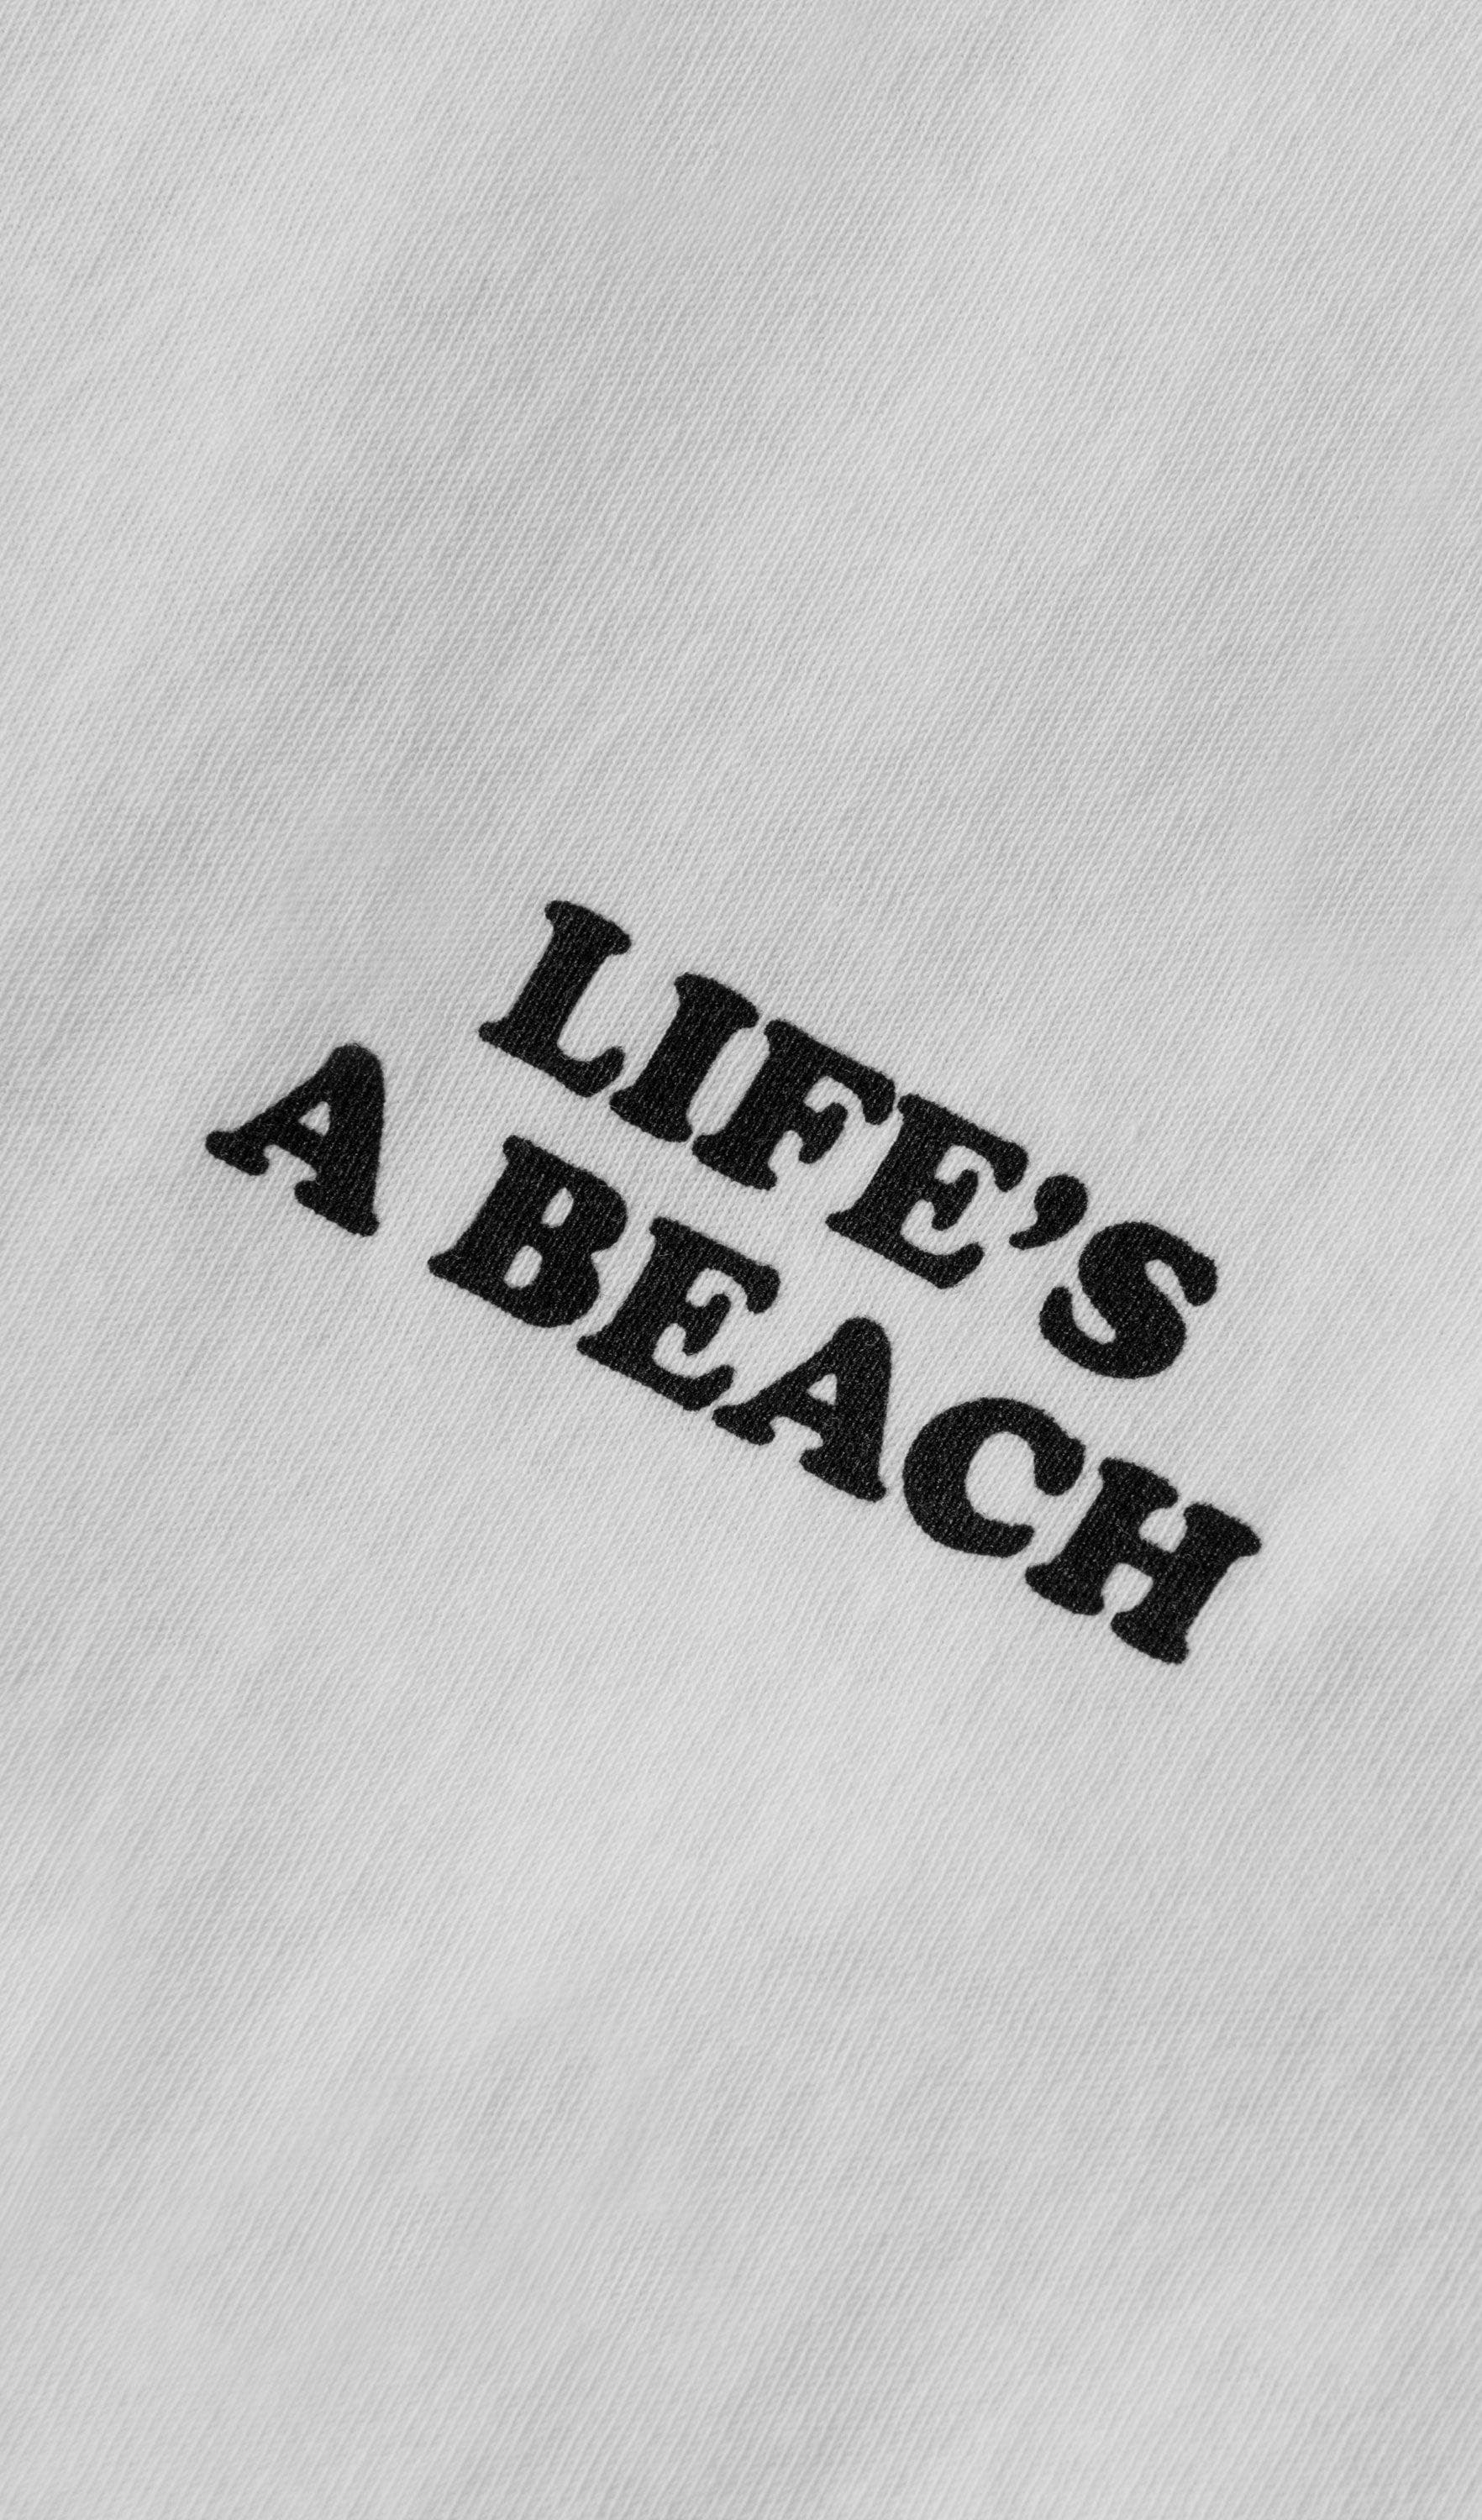 Acapella Ropa Men Graphics Playera Life's a Beach